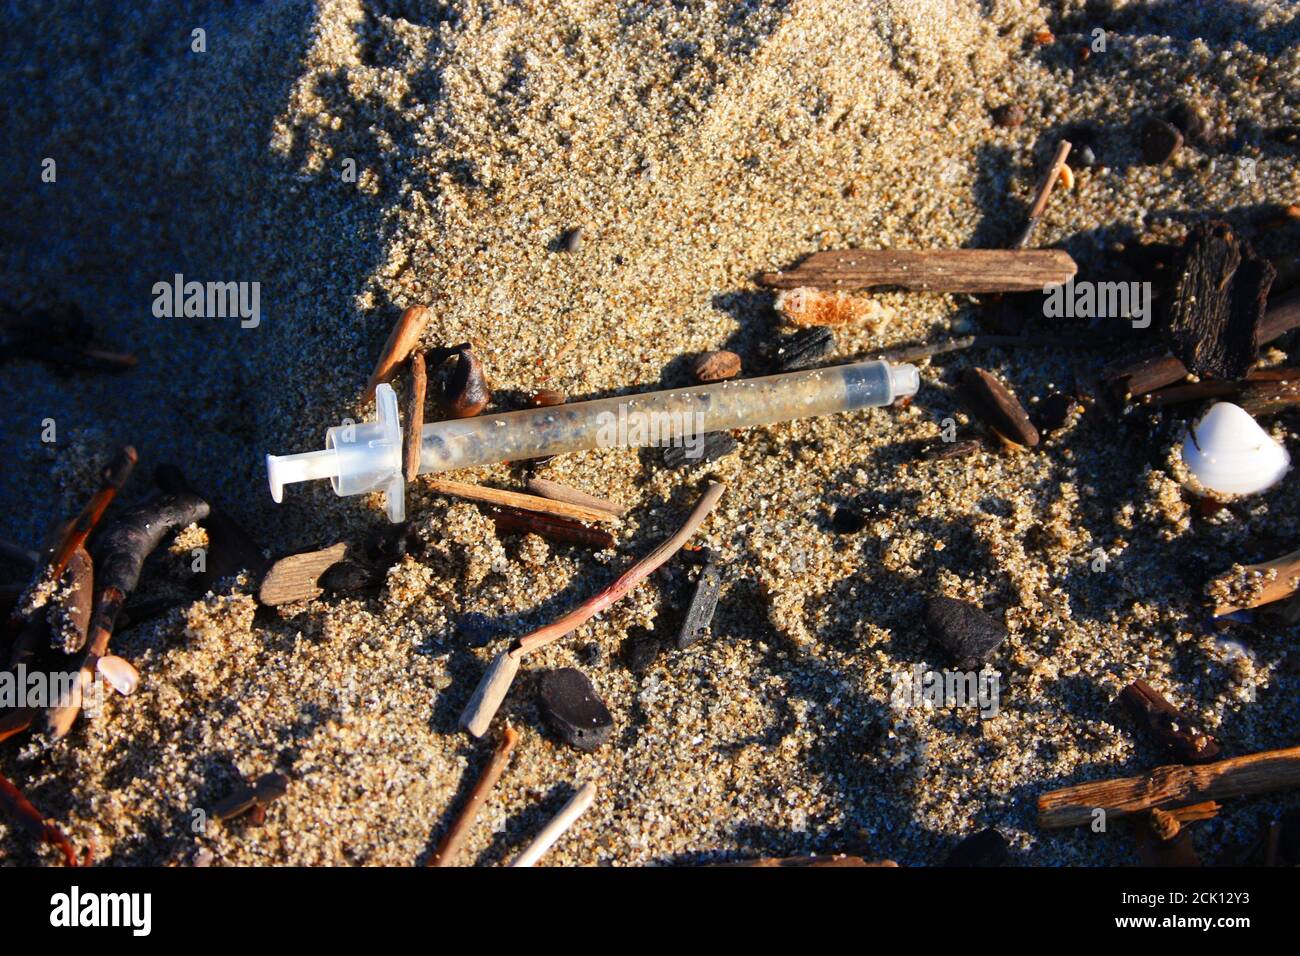 Gefährliche gebrauchte Spritzen am Strand in der Mitte verlassen Von anderem Schmutz und Müll Stockfoto